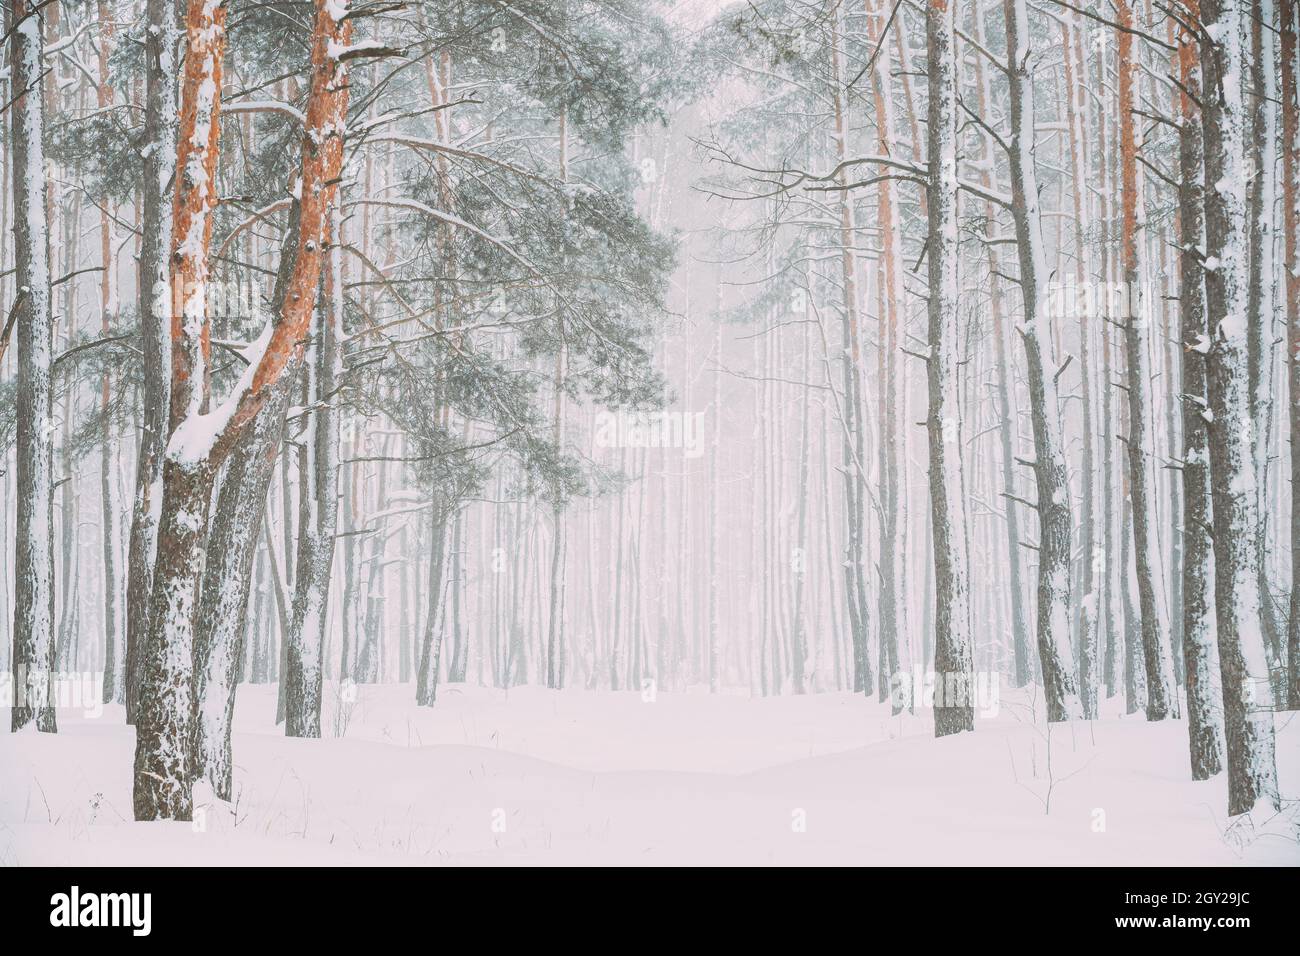 Schöne Snowy White Forest Road Im Winter Frosty Day. Schneit Im Winter Frost Woods. Schneebedecktes Wetter. Winter Snowy Nadelwald. Blizzard in Stockfoto